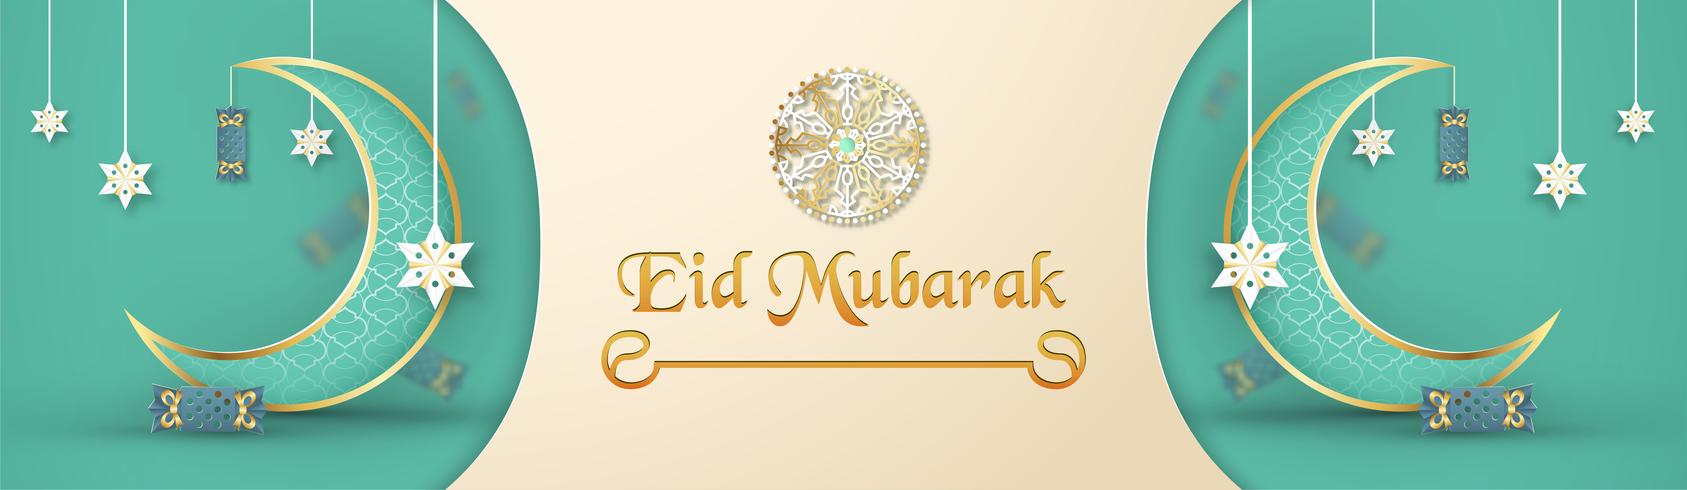 Modèle pour Eid Mubarak avec les tons vert et or. Illustration vectorielle 3D en papier découpé et artisanat pour carte de voeux islamique, invitation, couverture de livre, brochure, bannière Web, publicité. vecteur